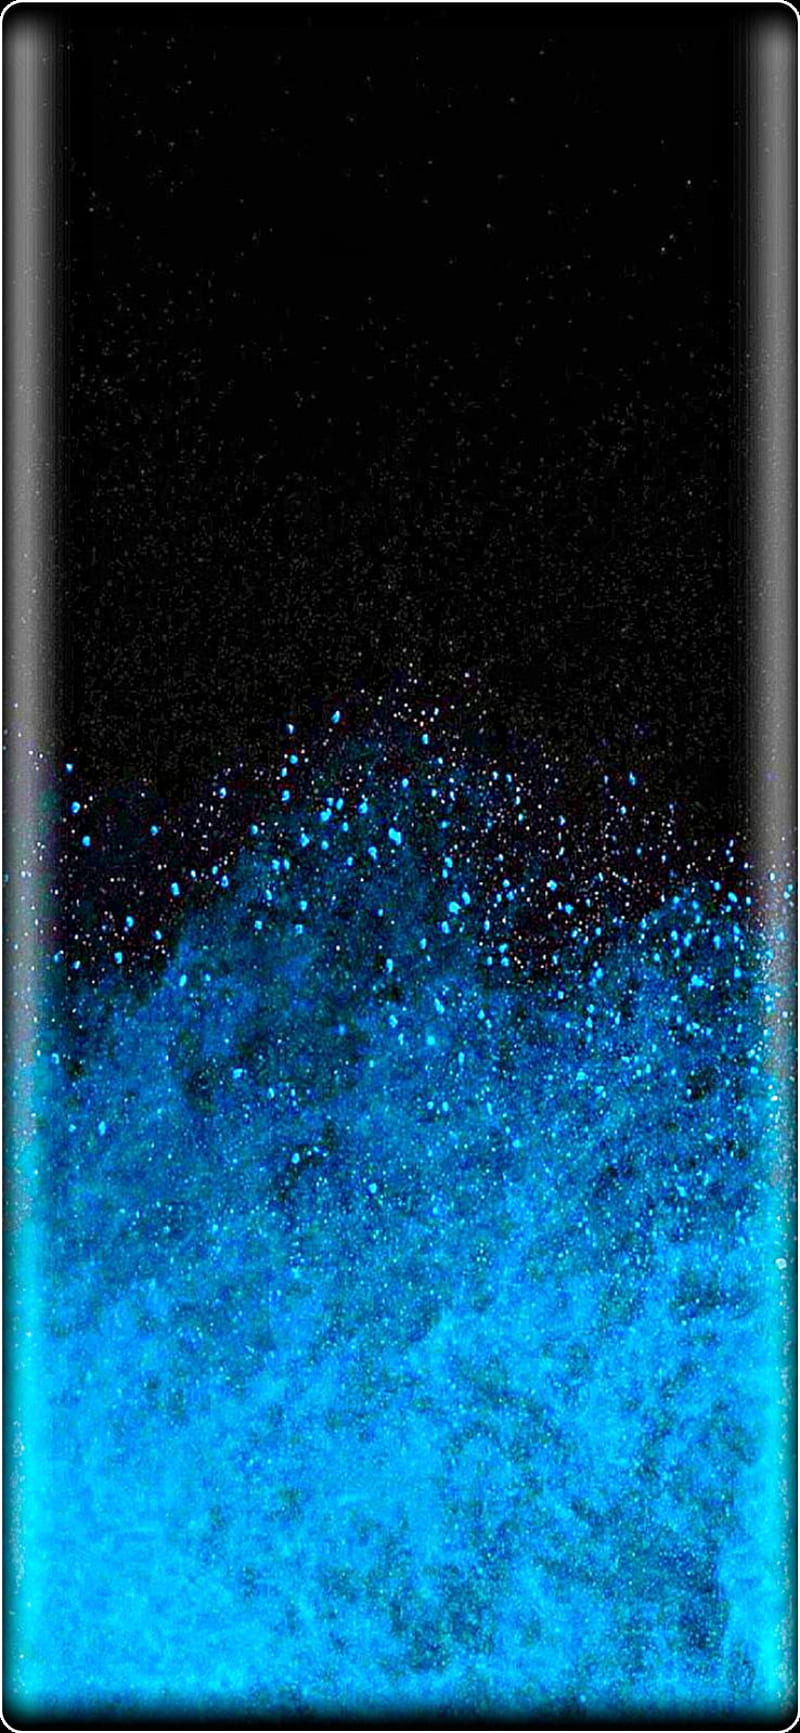 Samsung S21, blue, color, coral, galaxy, original, HD phone - Samsung S21, blue, color, coral, Galaxy: Bạn muốn tìm kiếm một thiết bị Samsung S21 với màu sắc đẹp mắt nhất? Hãy đến với bộ sưu tập sản phẩm Samsung S21 với các màu sắc tuyệt đẹp như xanh, màu đỏ san hô,... và các tính năng ưu việt như camera chụp ảnh chất lượng cao, màn hình HD rực rỡ, cùng nhiều tính năng thông minh khác của chiếc điện thoại Samsung S21 này.